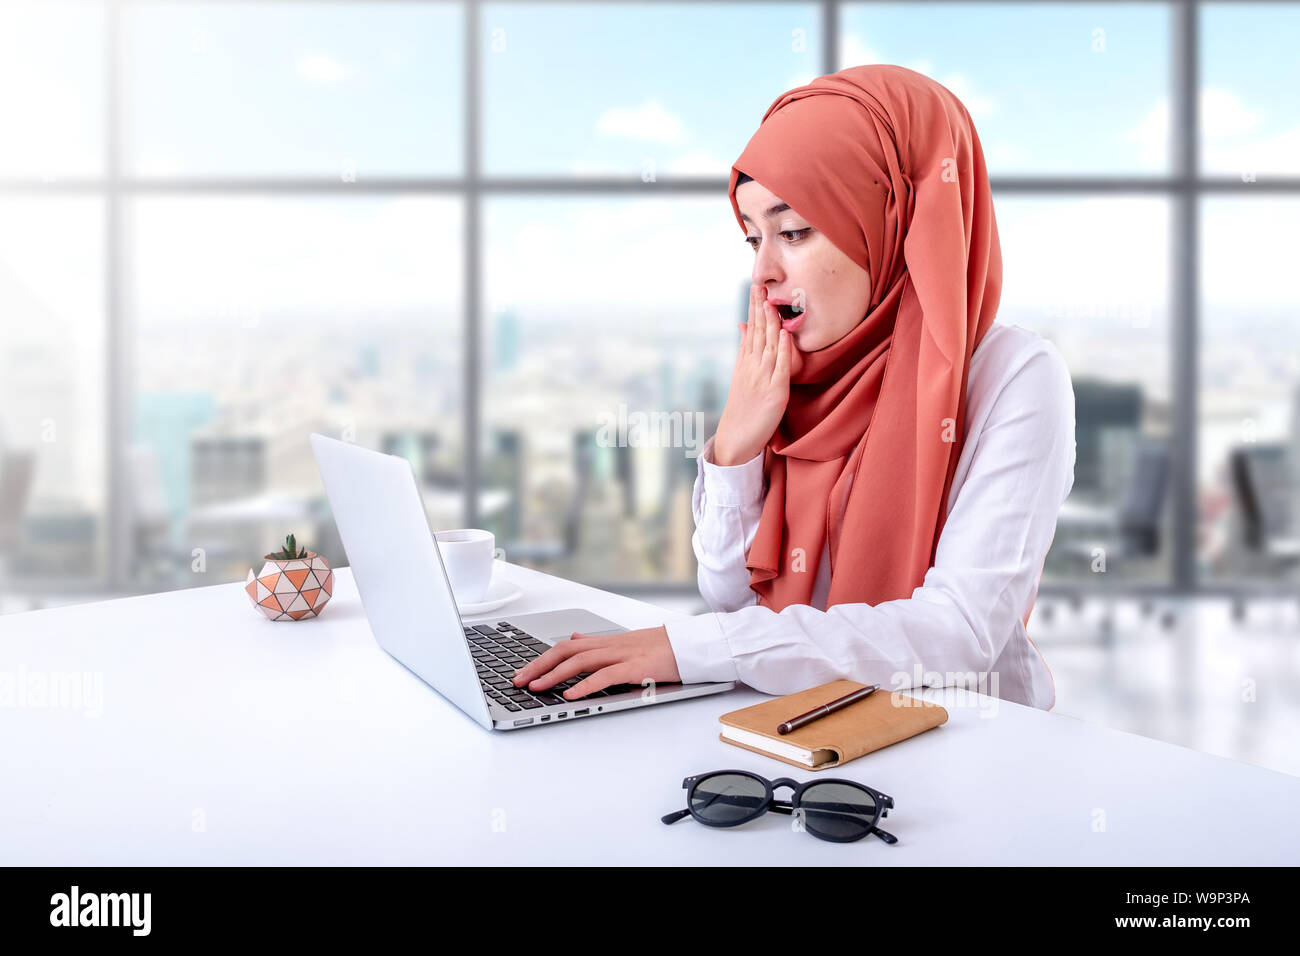 Femme musulmane en collaboration avec computer in office, hijab fille musulmane confus ou désorientés Banque D'Images